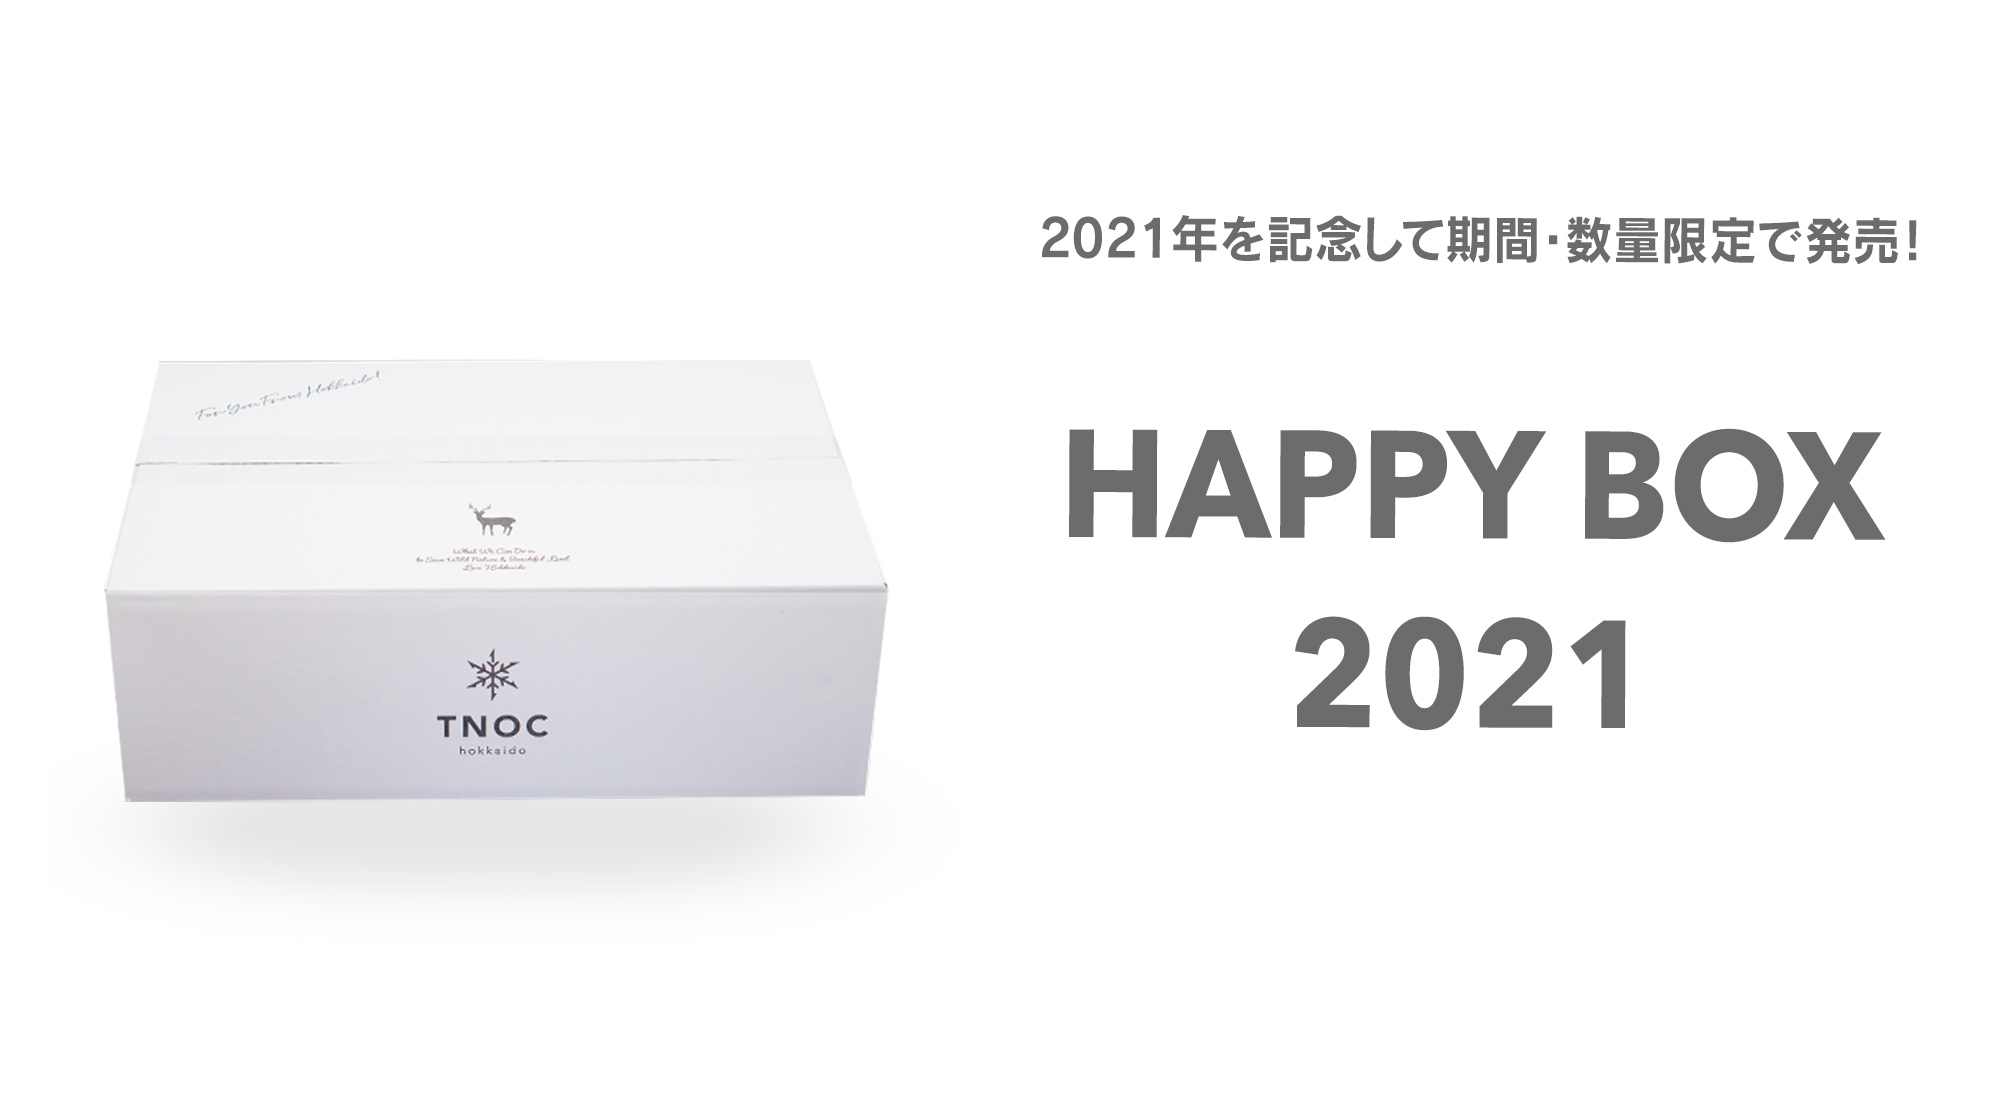 HAPPY BOX 2021を数量限定で販売！